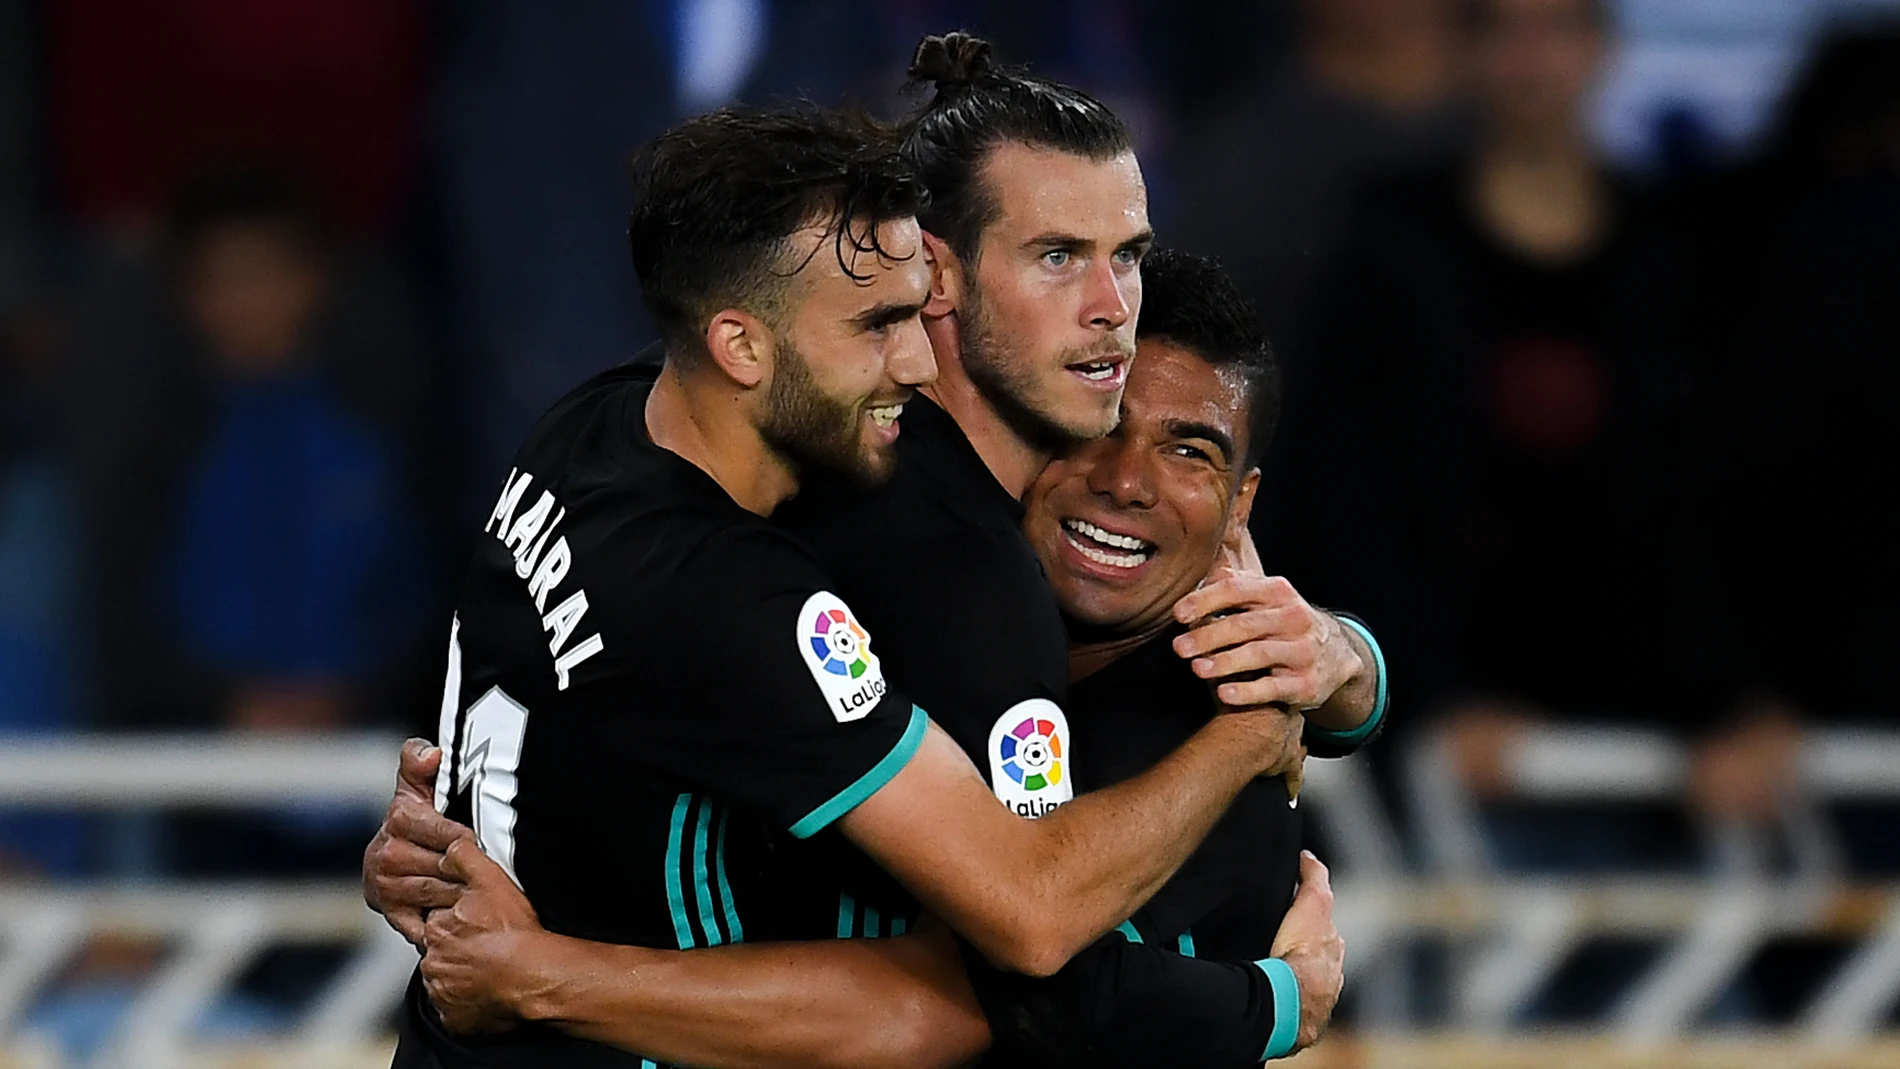 Los jugadores del Real Madrid celebran el gol